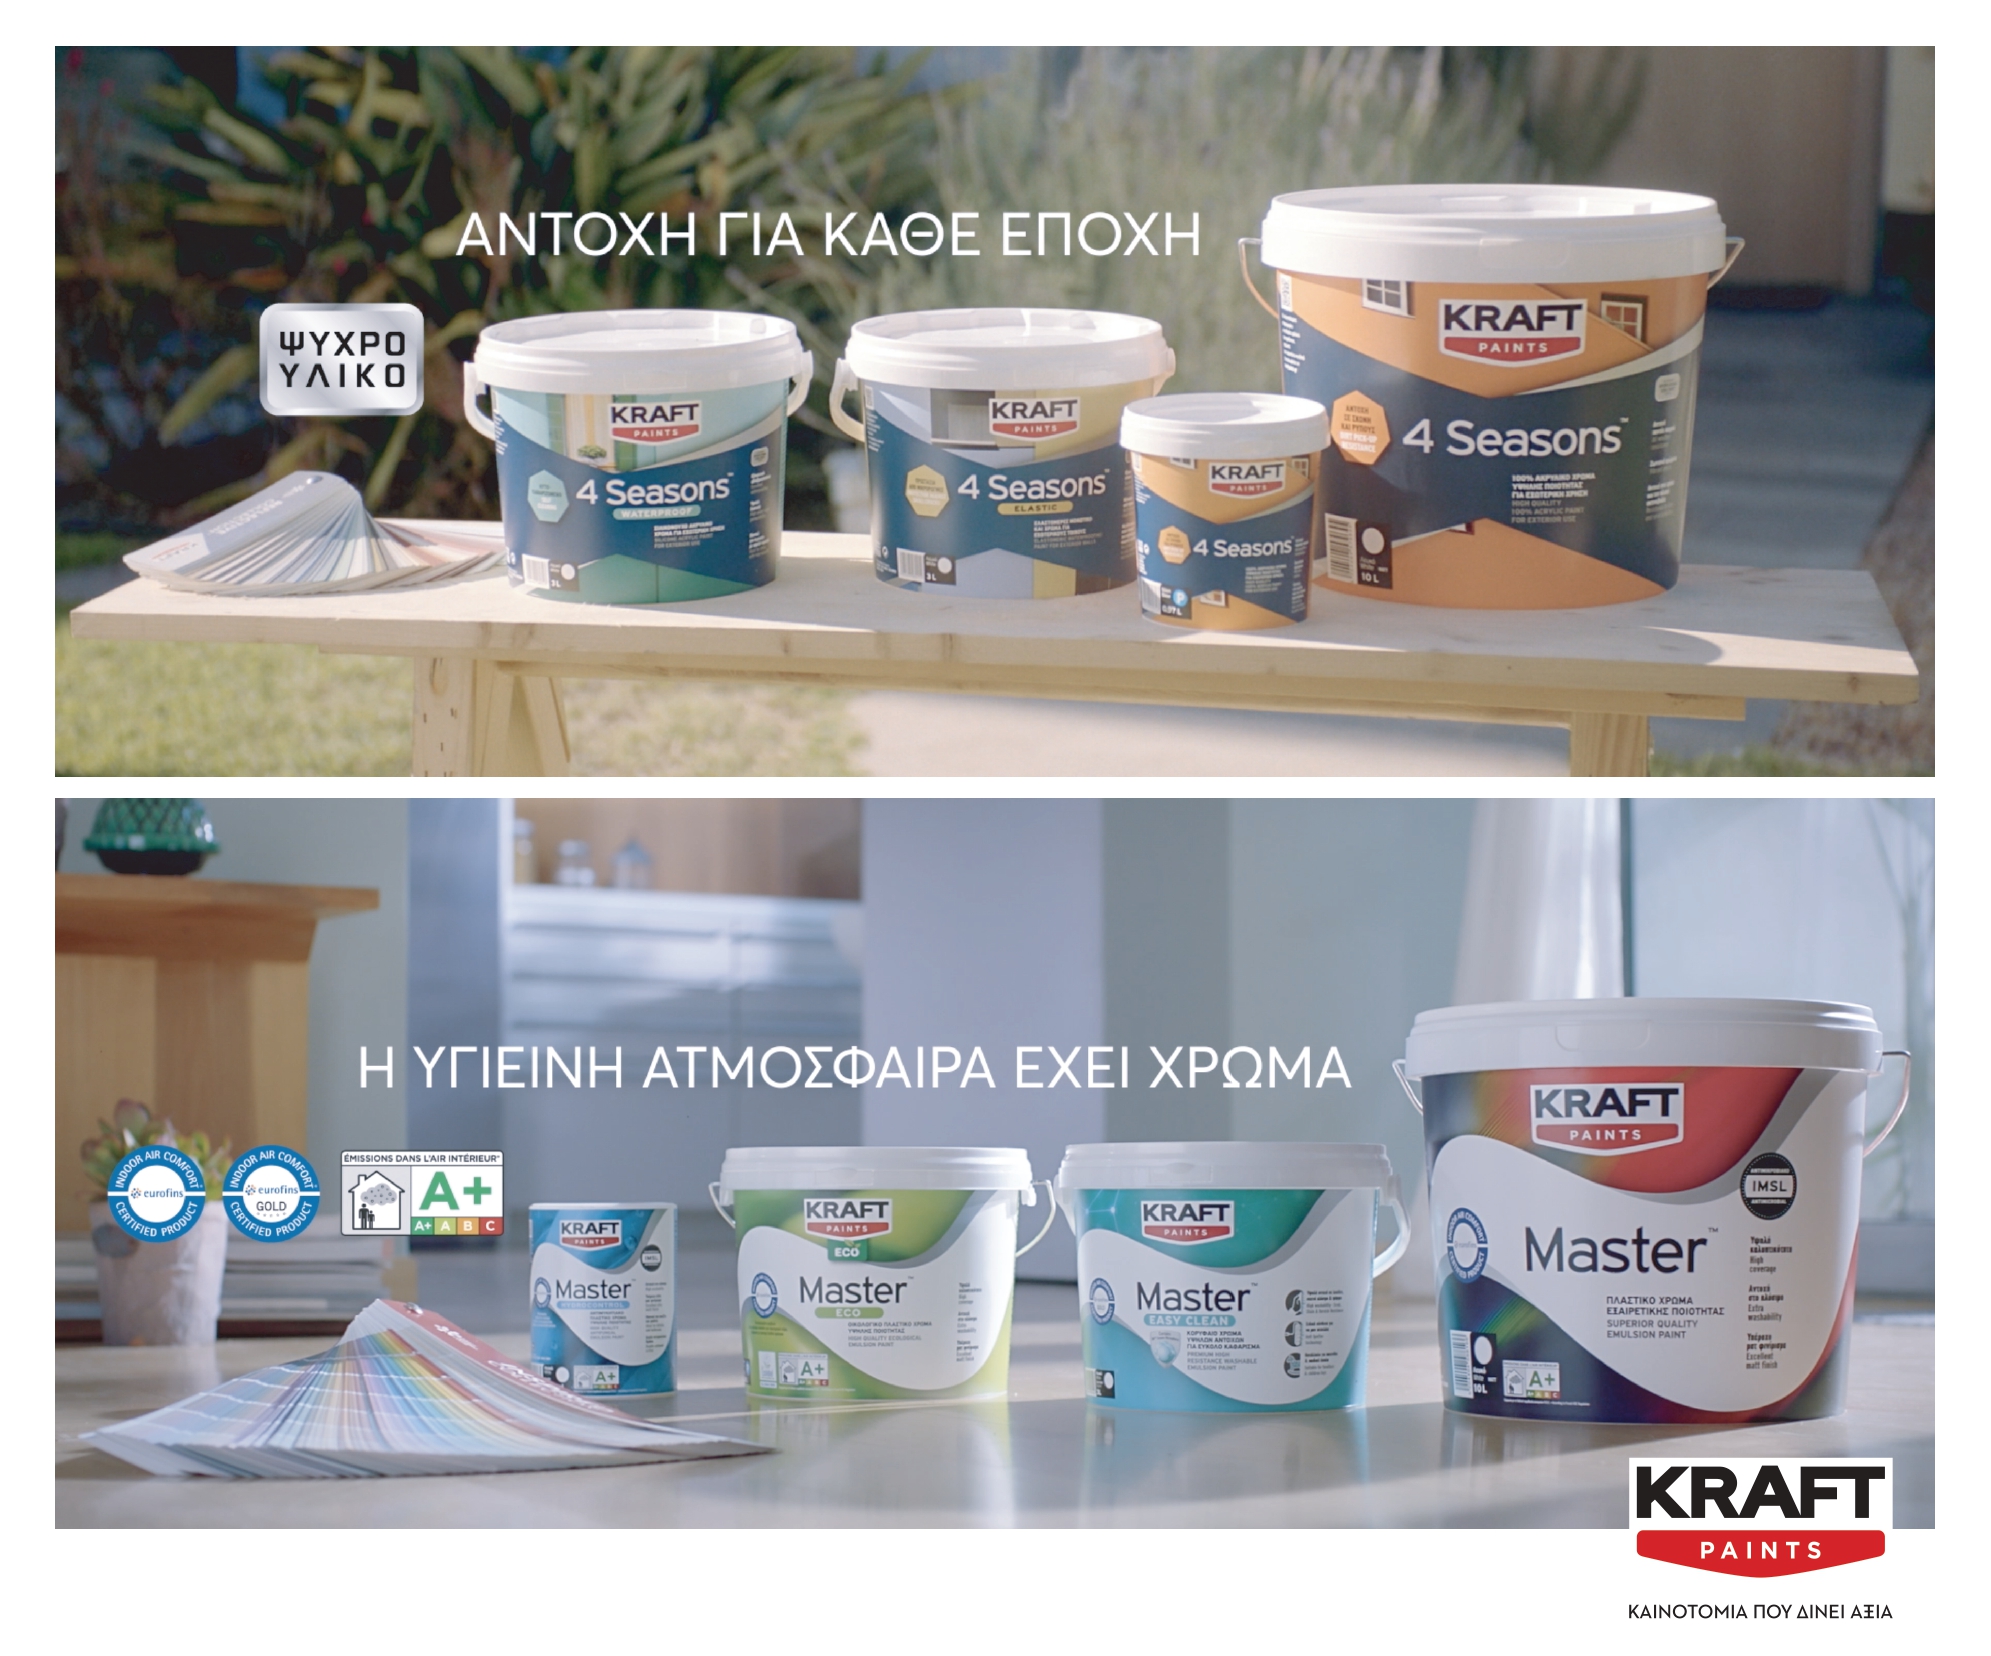 Δύο νέα διαφημιστικά τηλεοπτικά spots από την KRAFT Paints